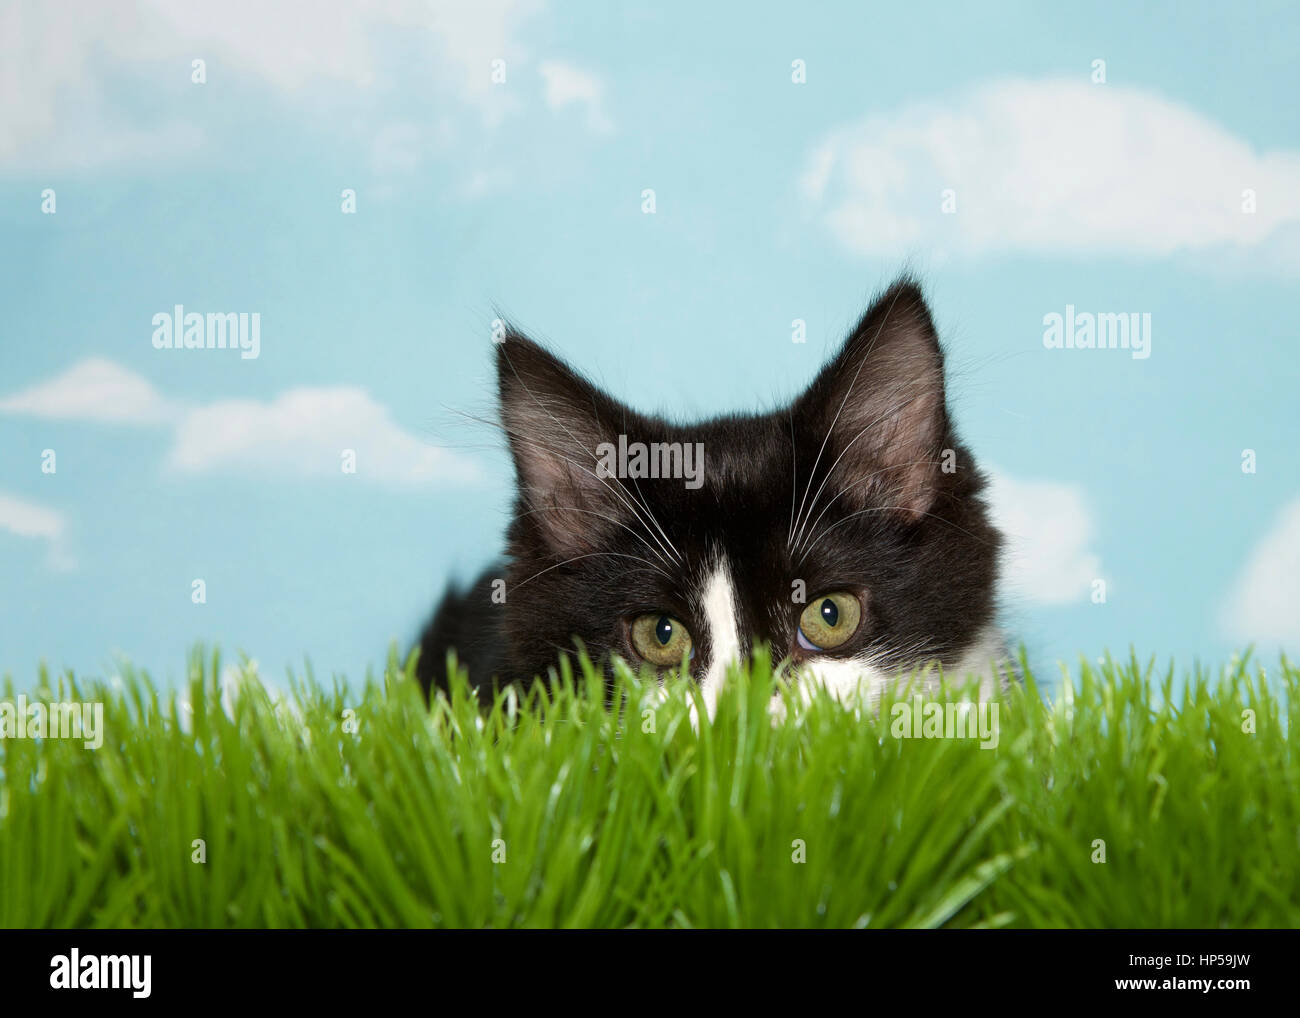 Blanco y negro cabello mediano gatito agazapado en el pasto largo, fondo azul cielo con nubes. Espacio de copia Foto de stock